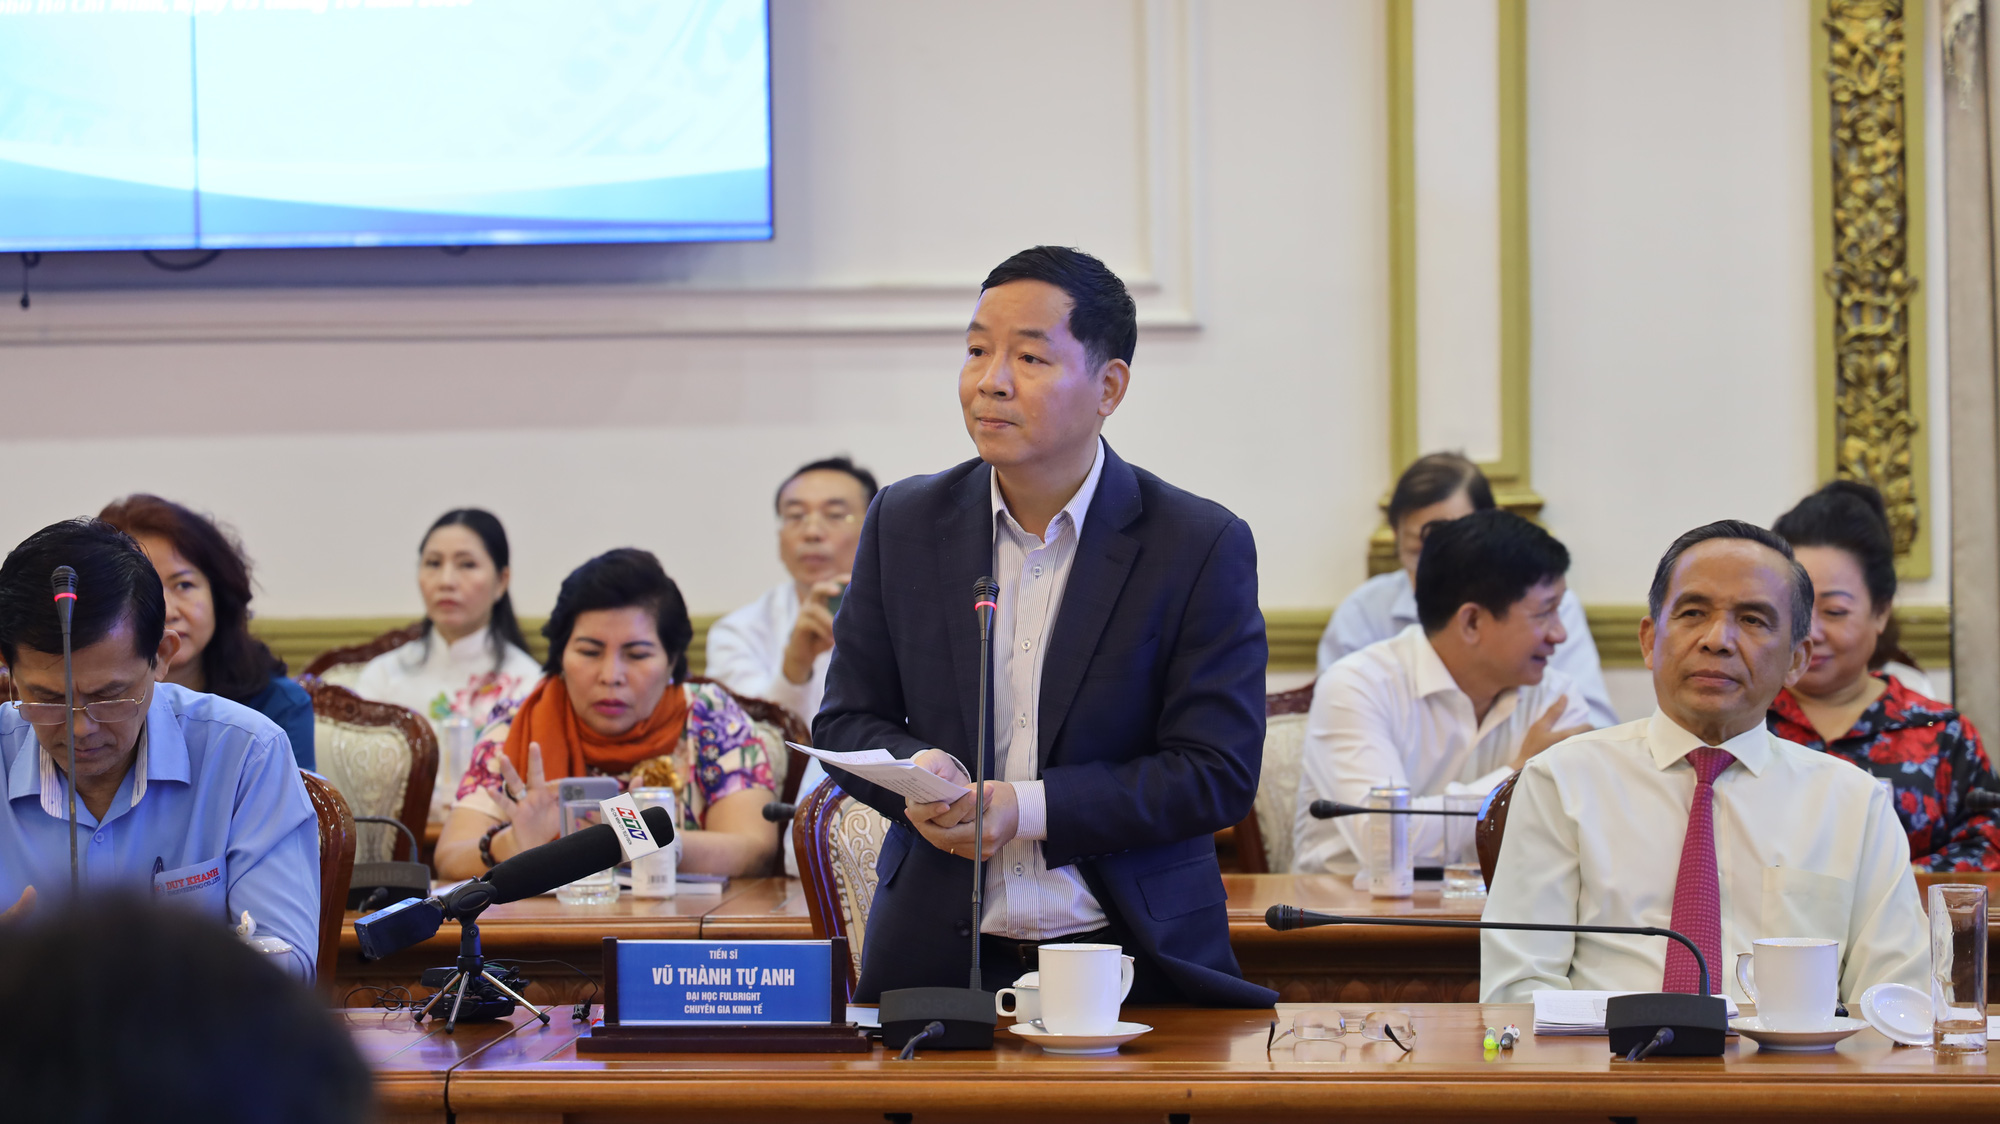 TS Vũ Thành Tự Anh: 'Nên giảm thuế VAT để bảo vệ doanh nghiệp' - Ảnh 5.